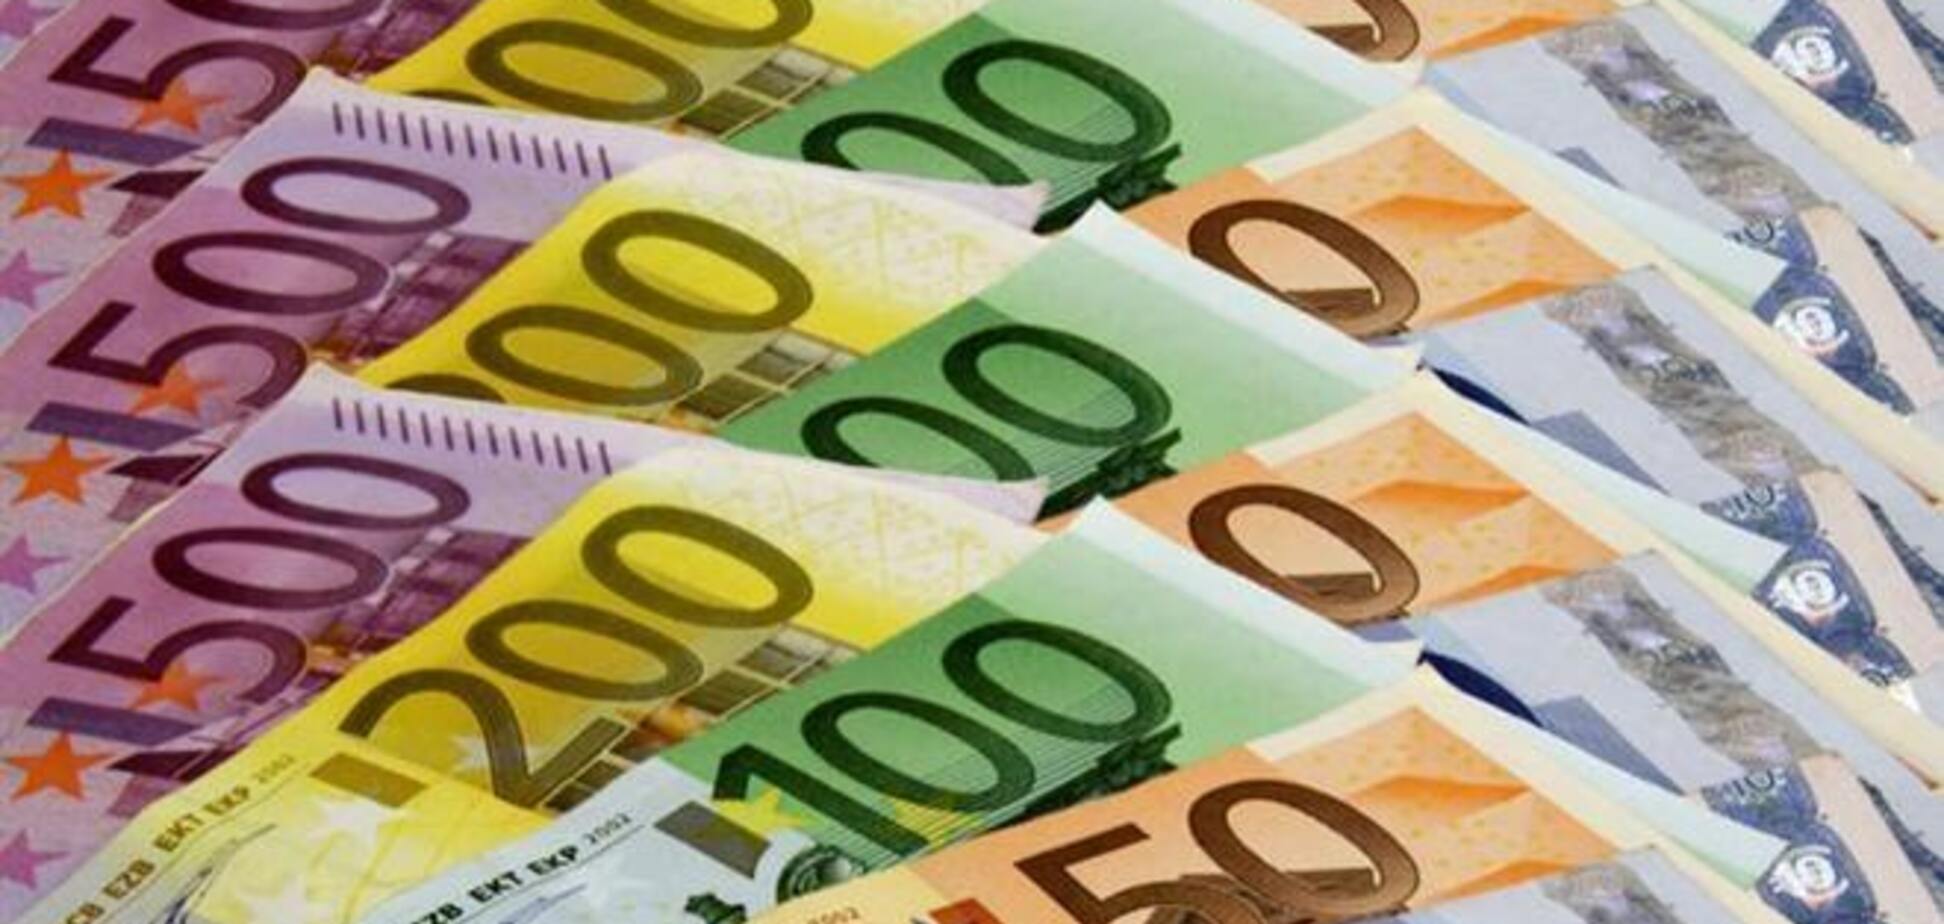 Курс продажи евро может достигнуть 11,52 гривен, - эксперт